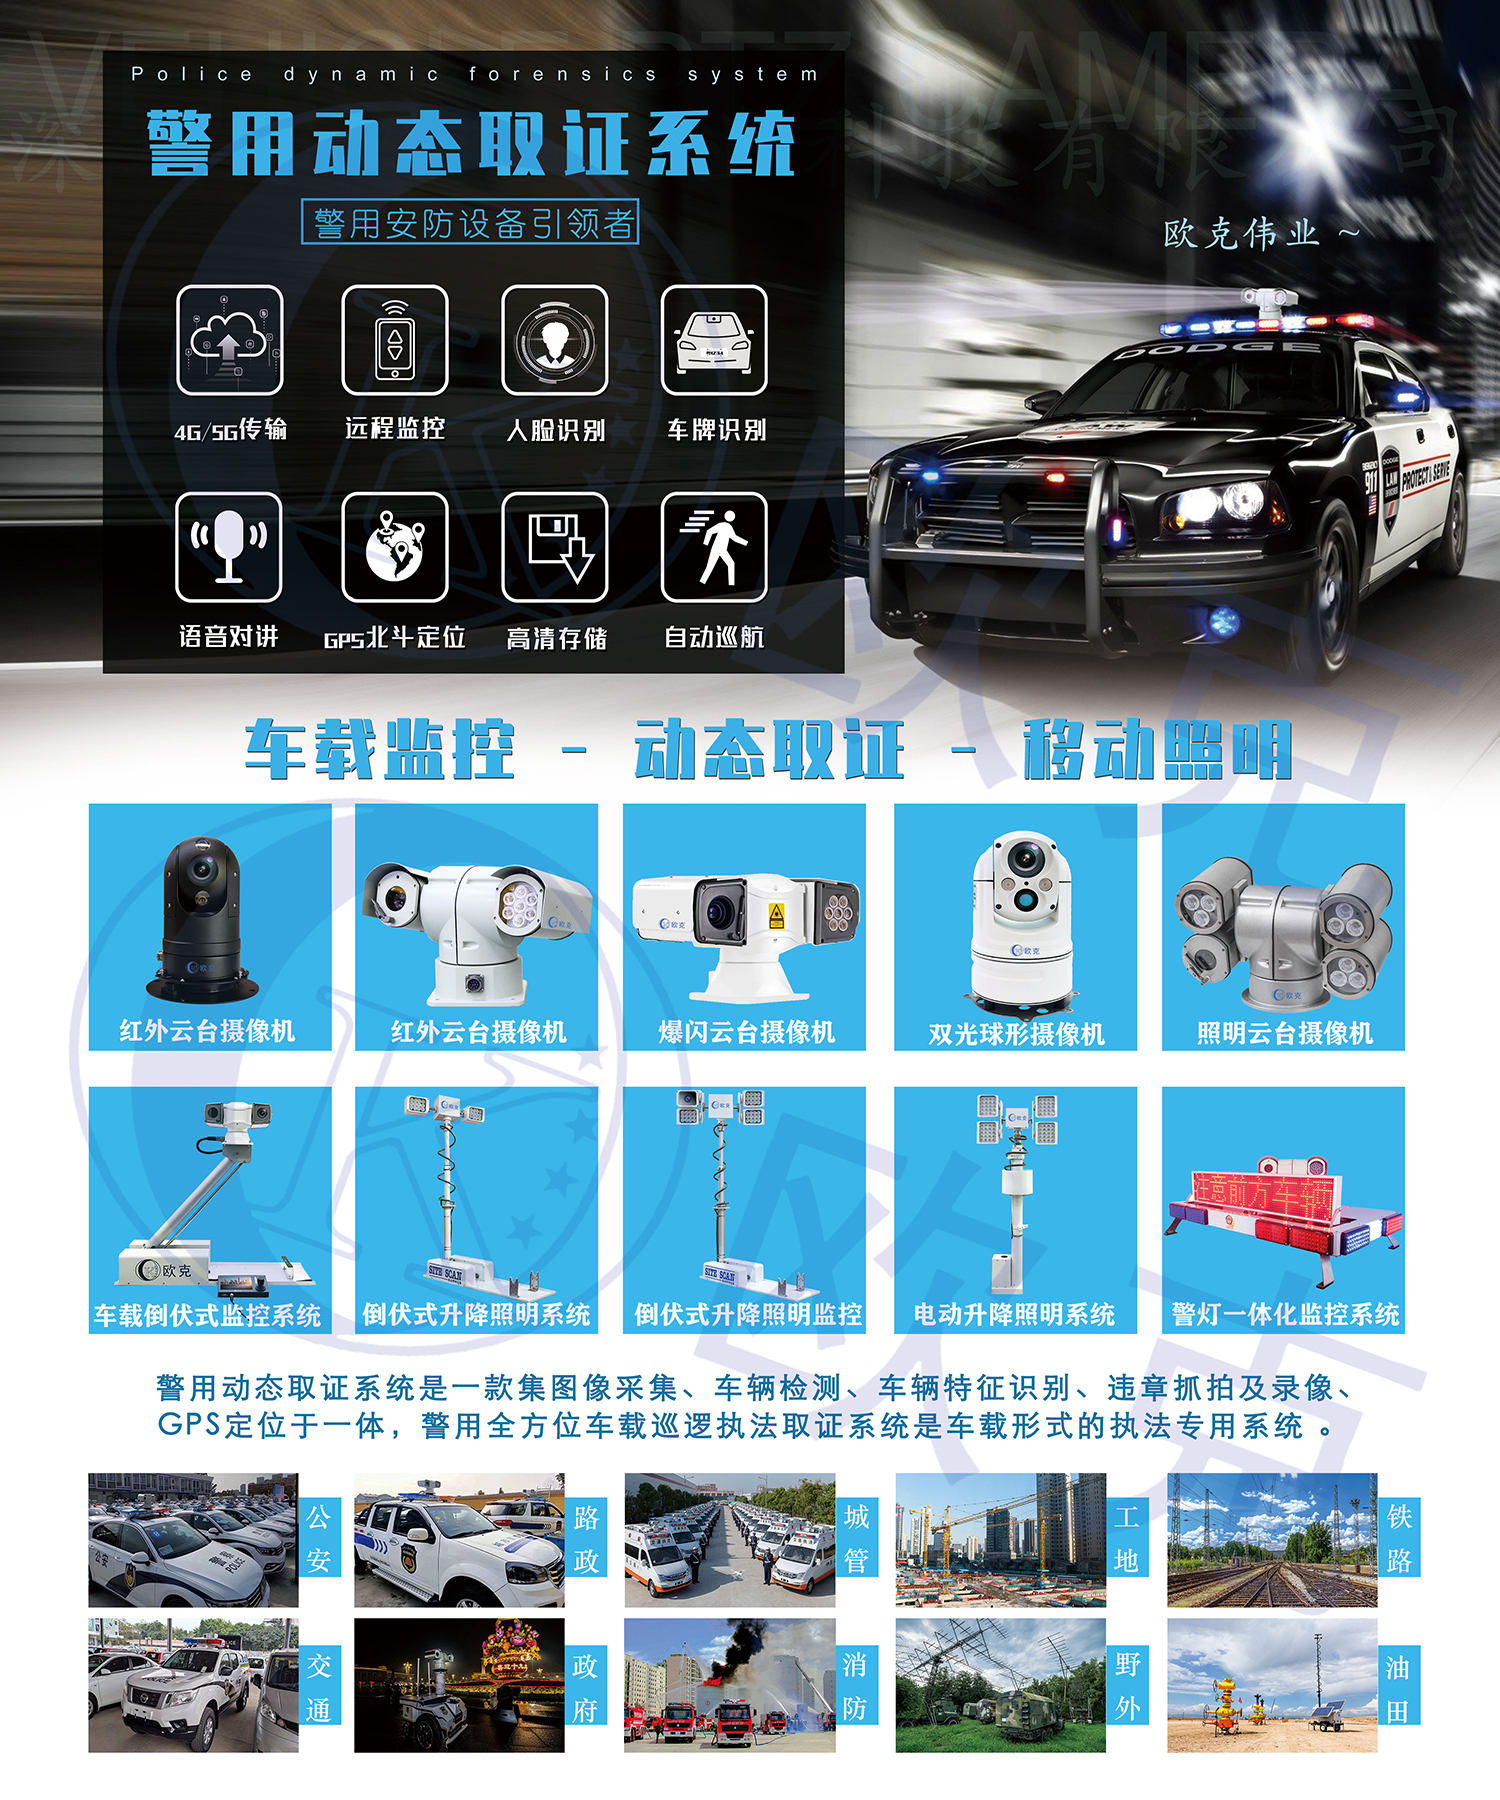 第十八届中国国际社会公共安全博览,动兵站监控取证系统,4G/5G+AI智能布控球,智能车载云台摄像机,车载升降杆,倒伏升降照明灯,移动升降照明系统,气动/手动/电动升降桅